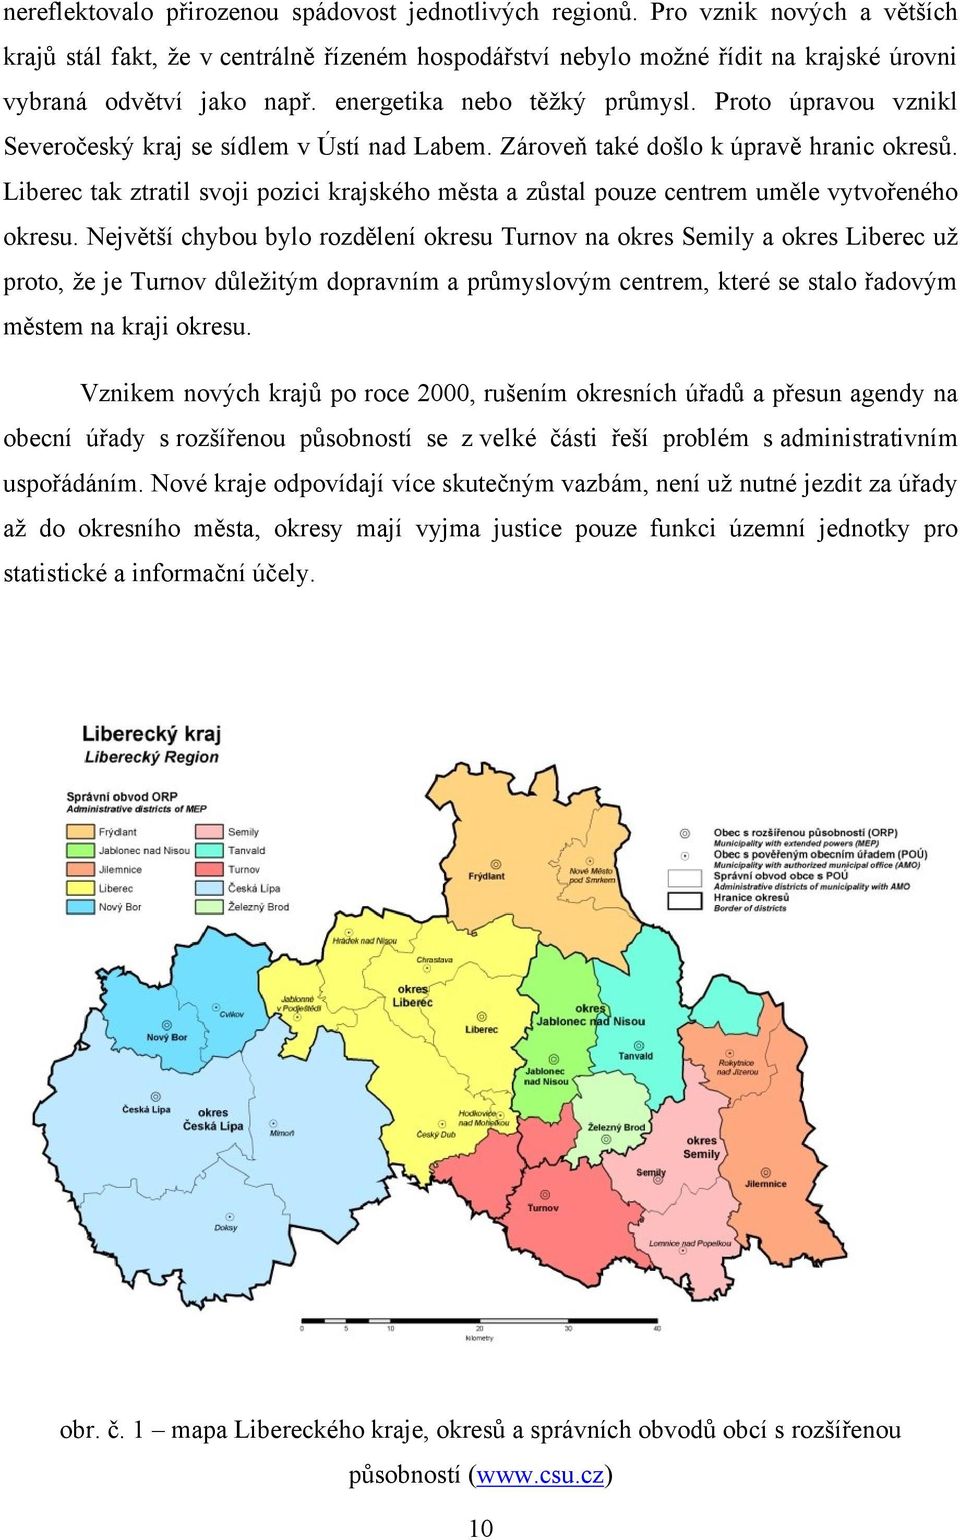 Proto úpravou vznikl Severočeský kraj se sídlem v Ústí nad Labem. Zároveň také došlo k úpravě hranic okresů.